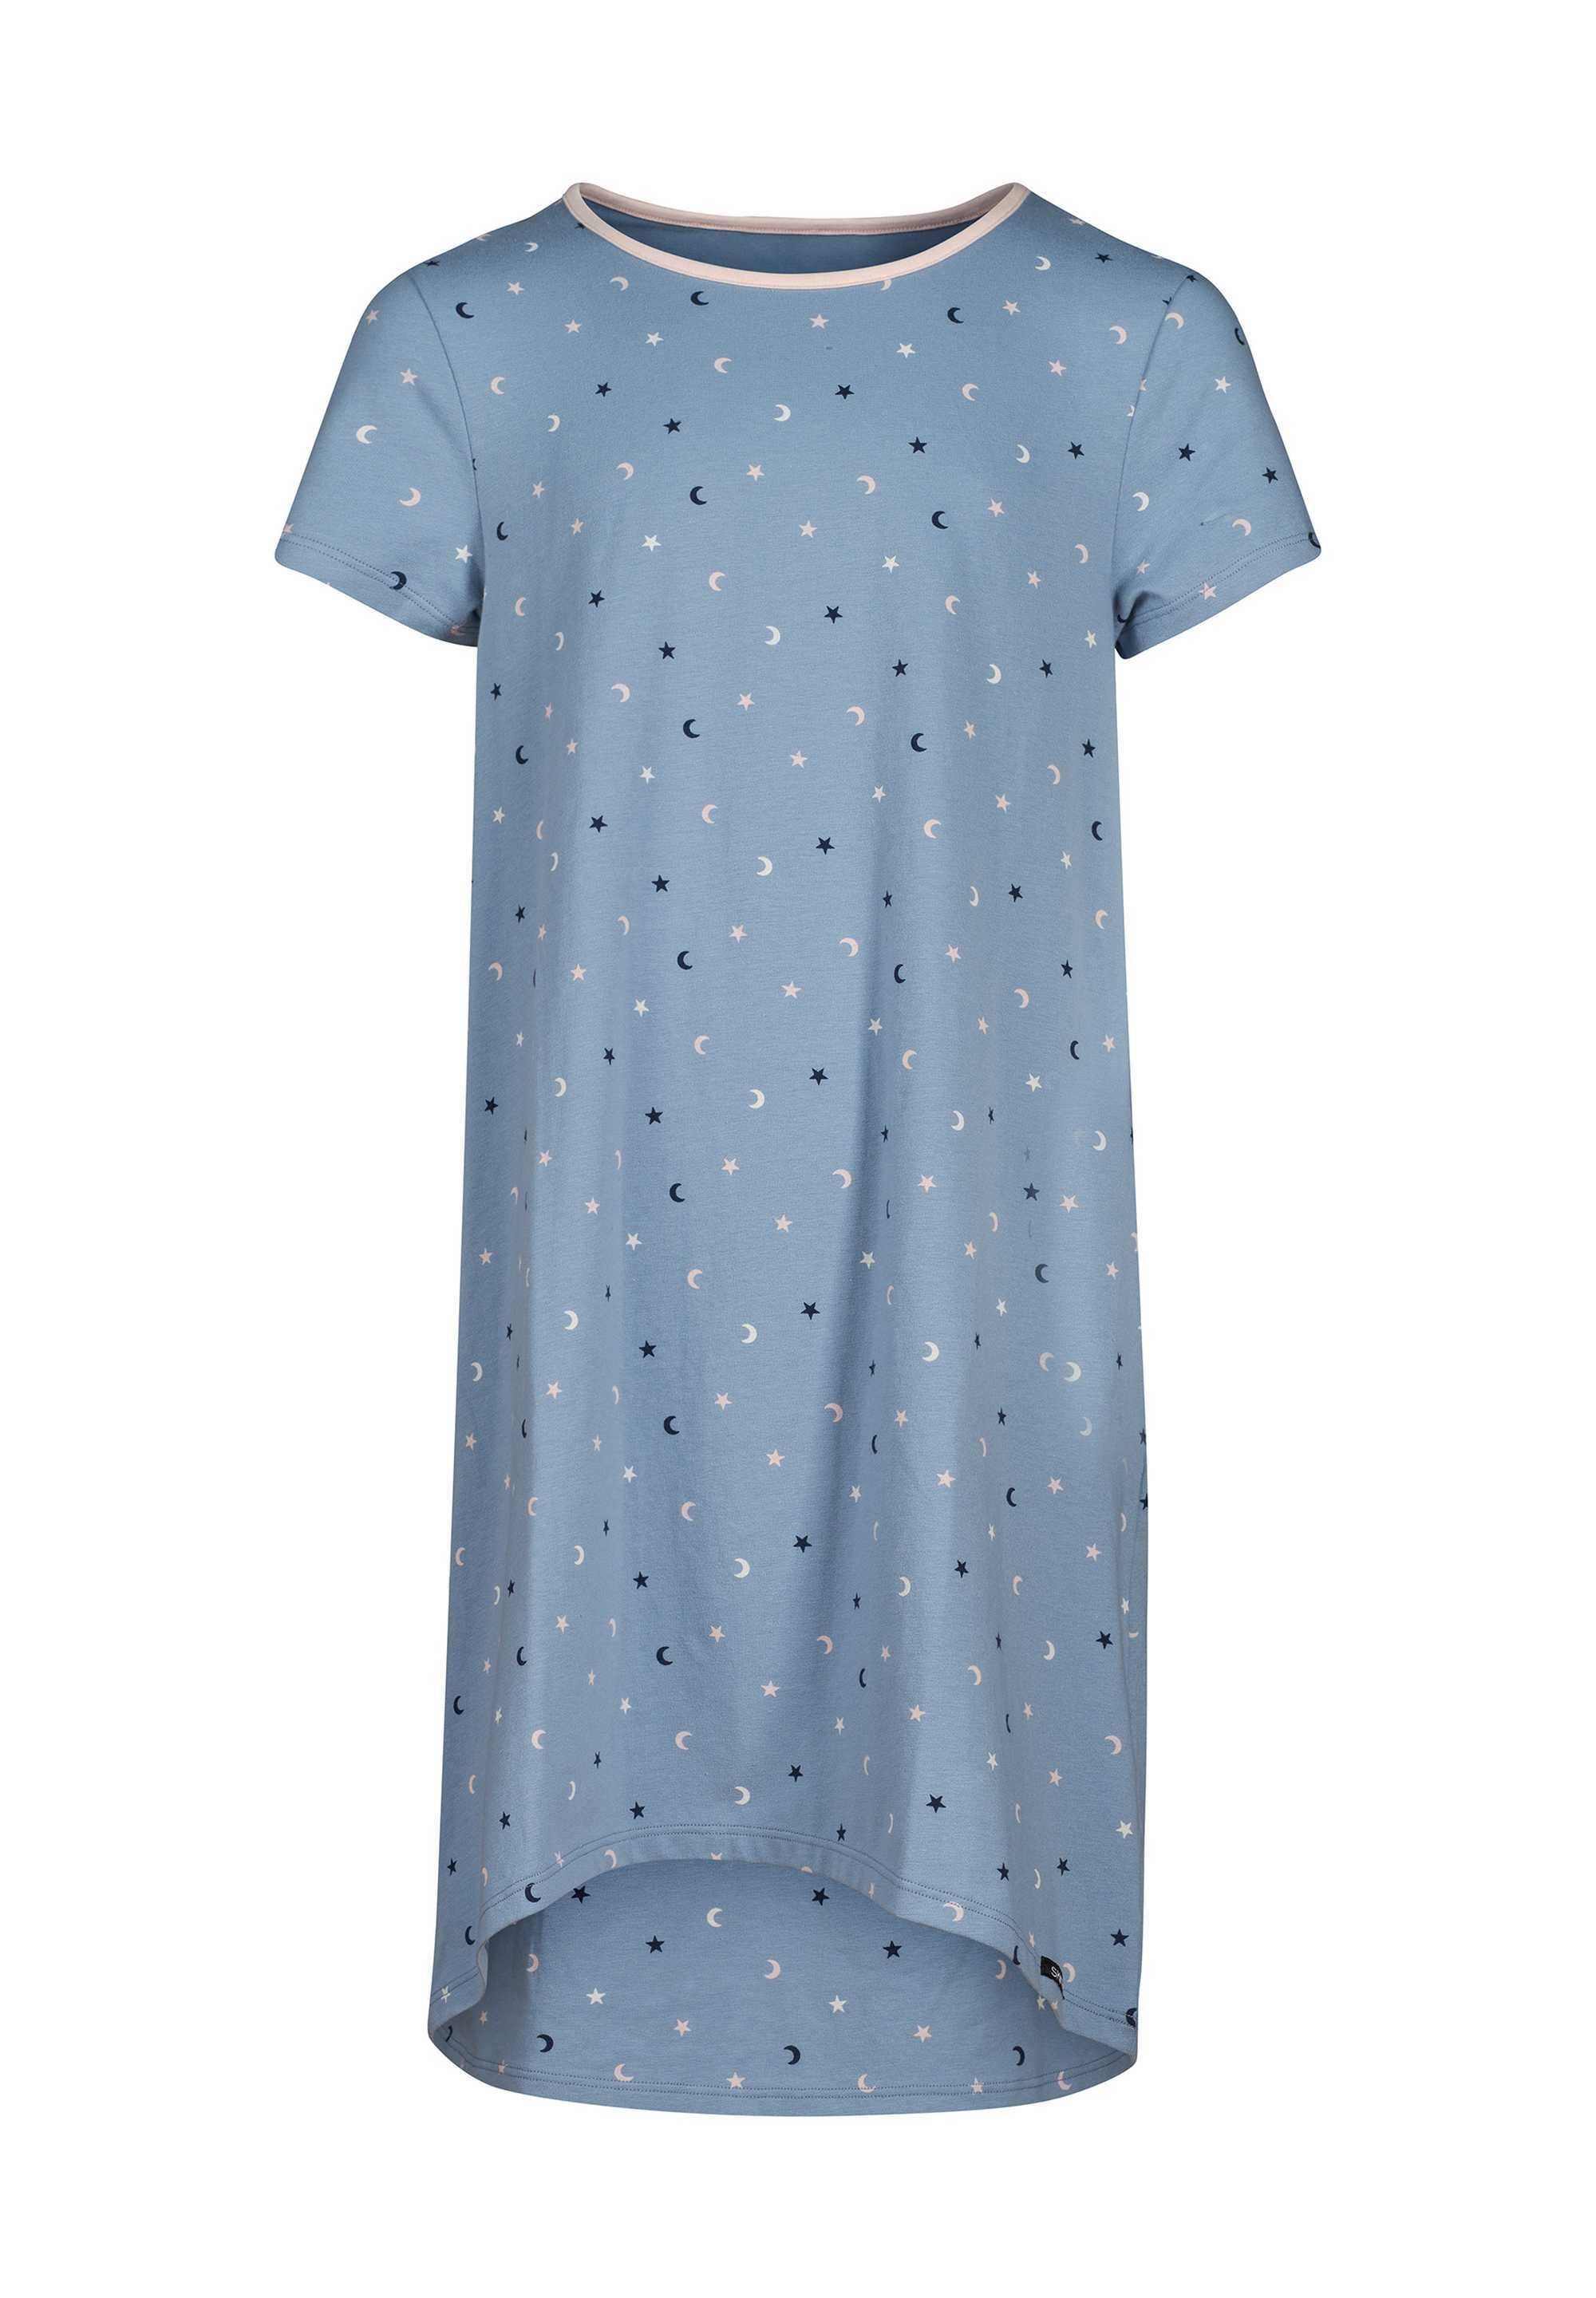 Skiny Pyjama Mädchen Nachthemd - Sleepshirt, Kurzarm, Kinder Blau/Sterne